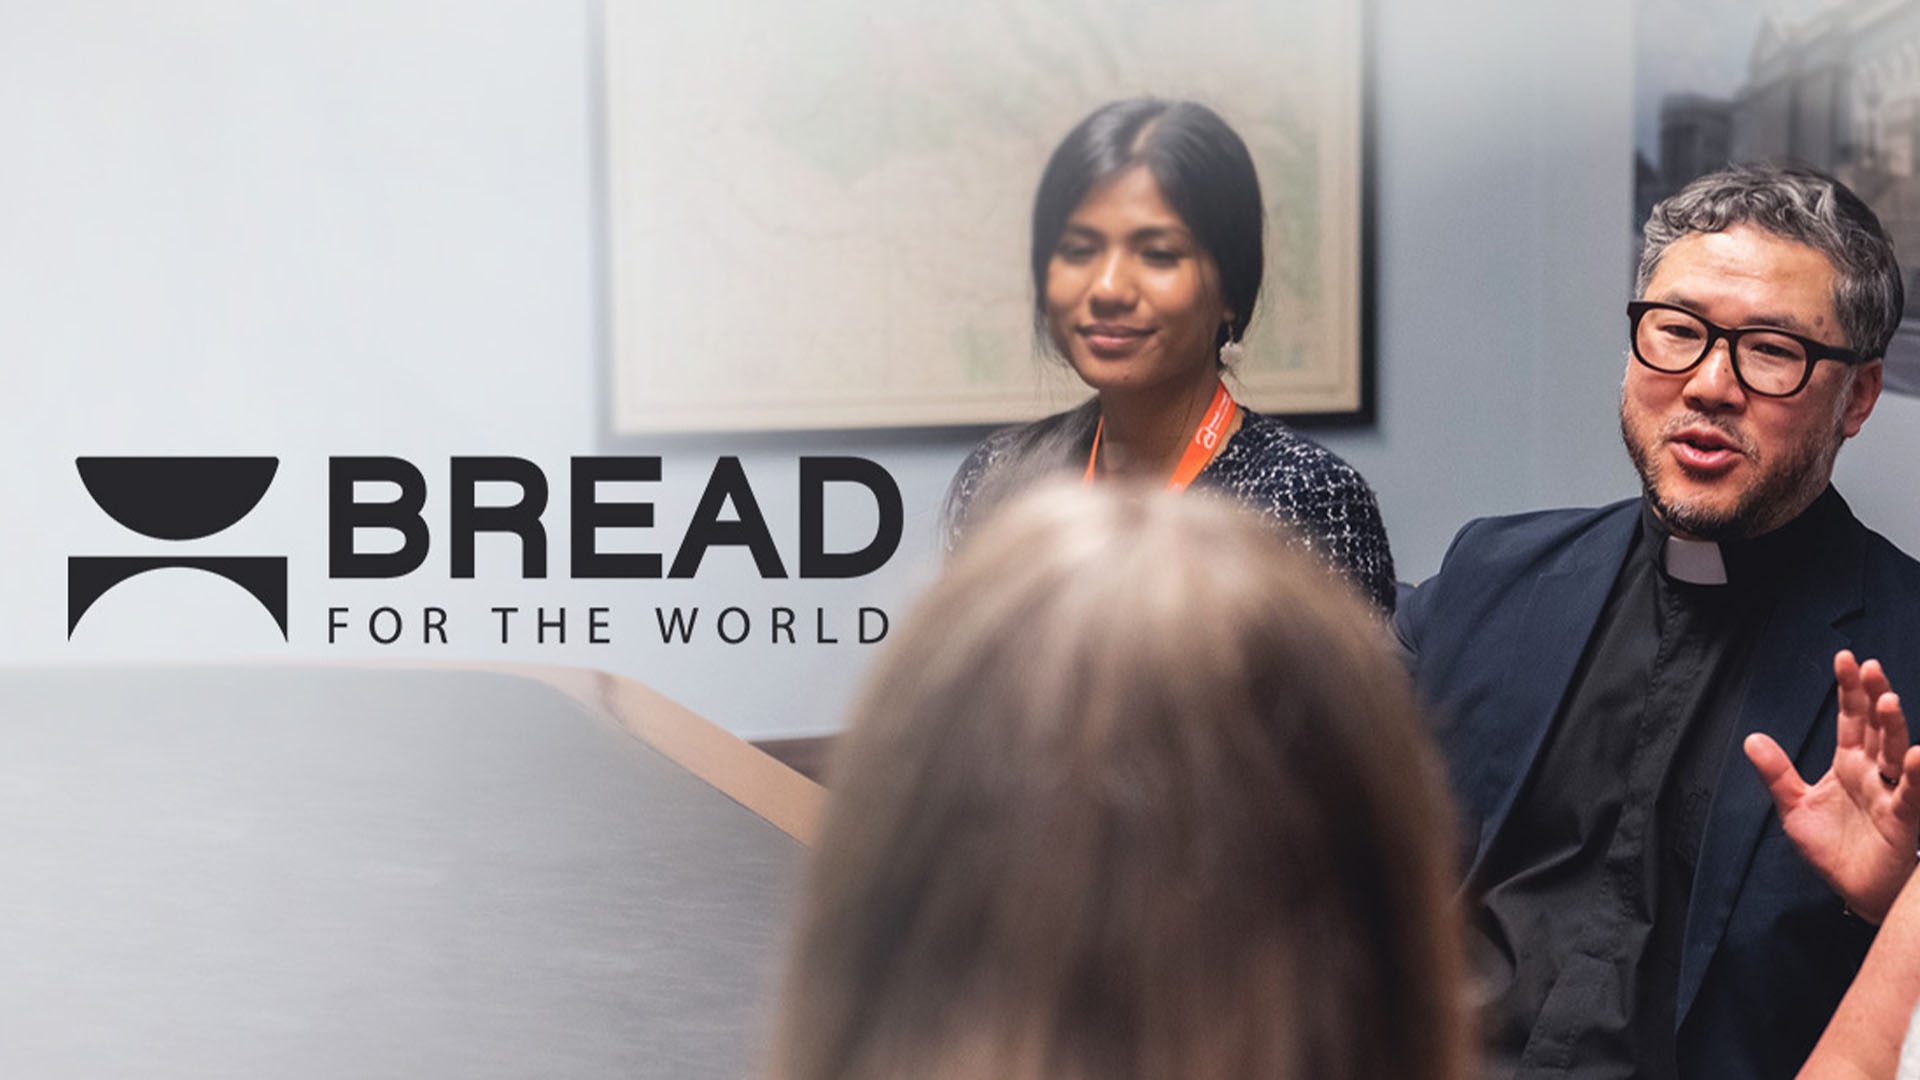 www.bread.org